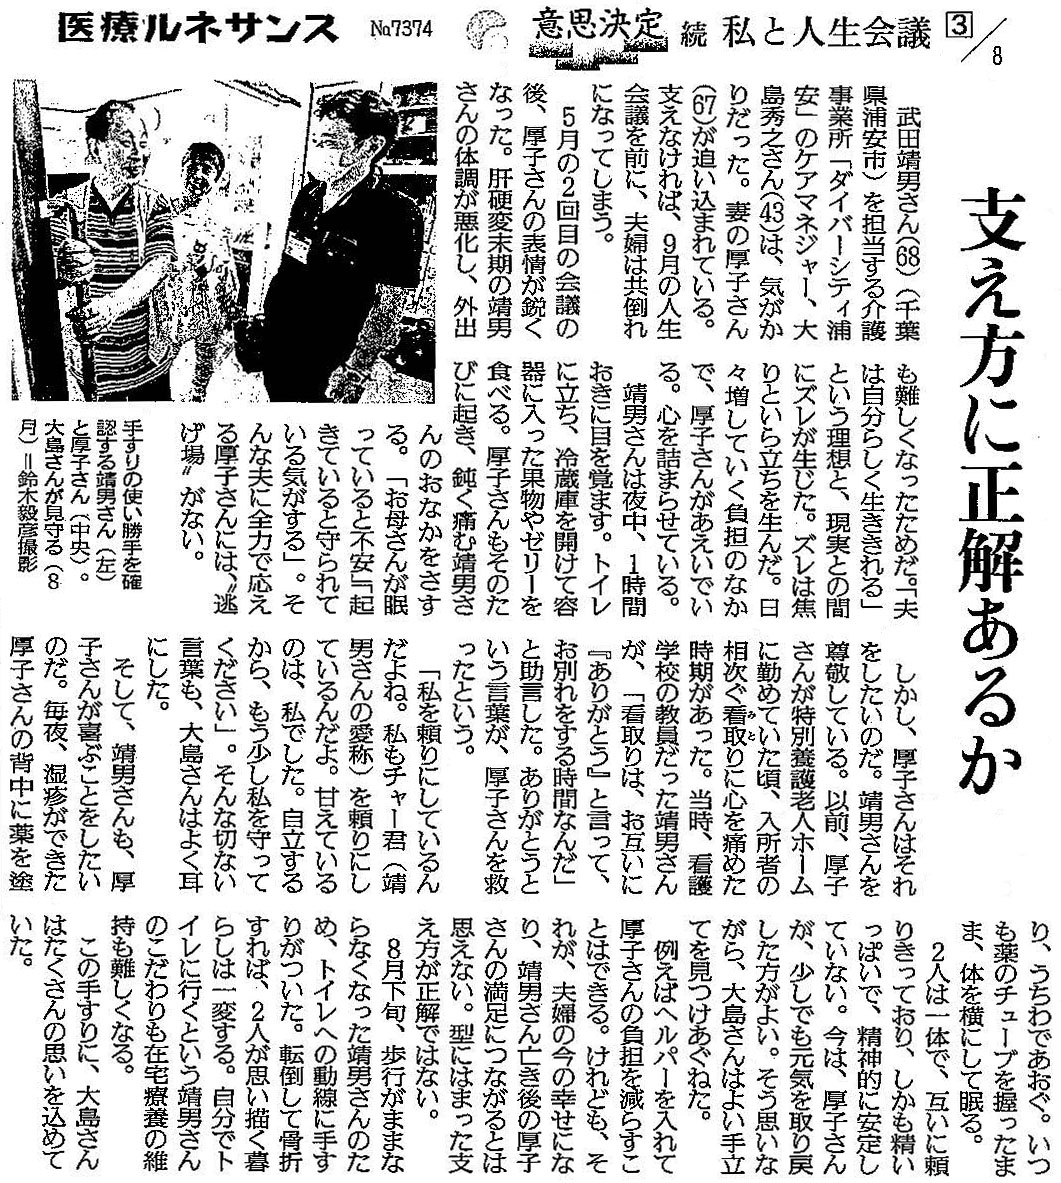 読売新聞 2020年9月25日掲載記事